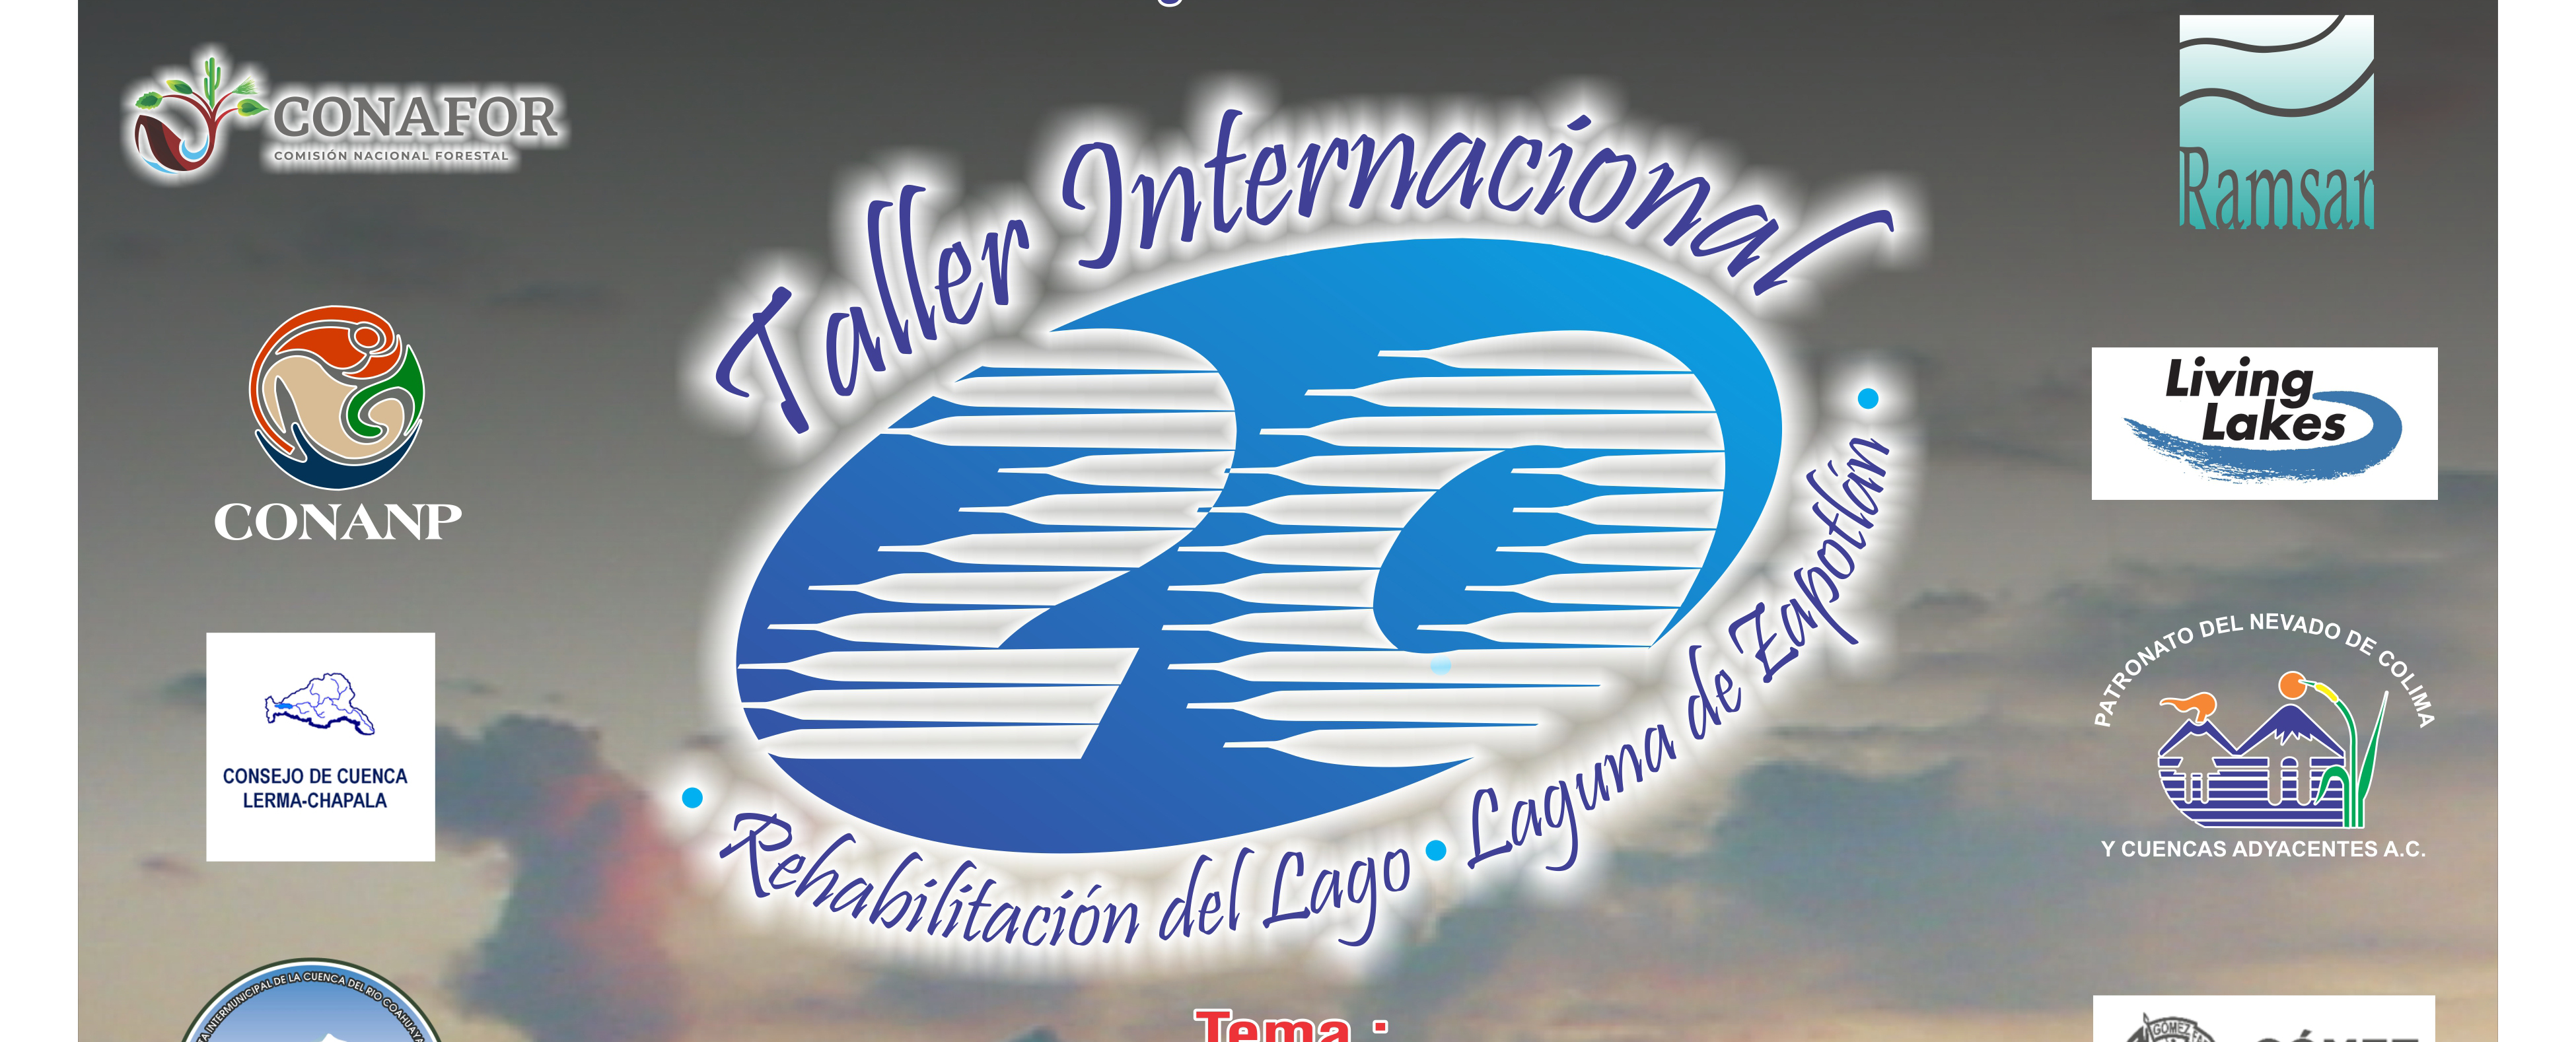 XIV Congreso y XX Curso Taller Internacional sobre Cuencas, Humedales y su Rehabilitación